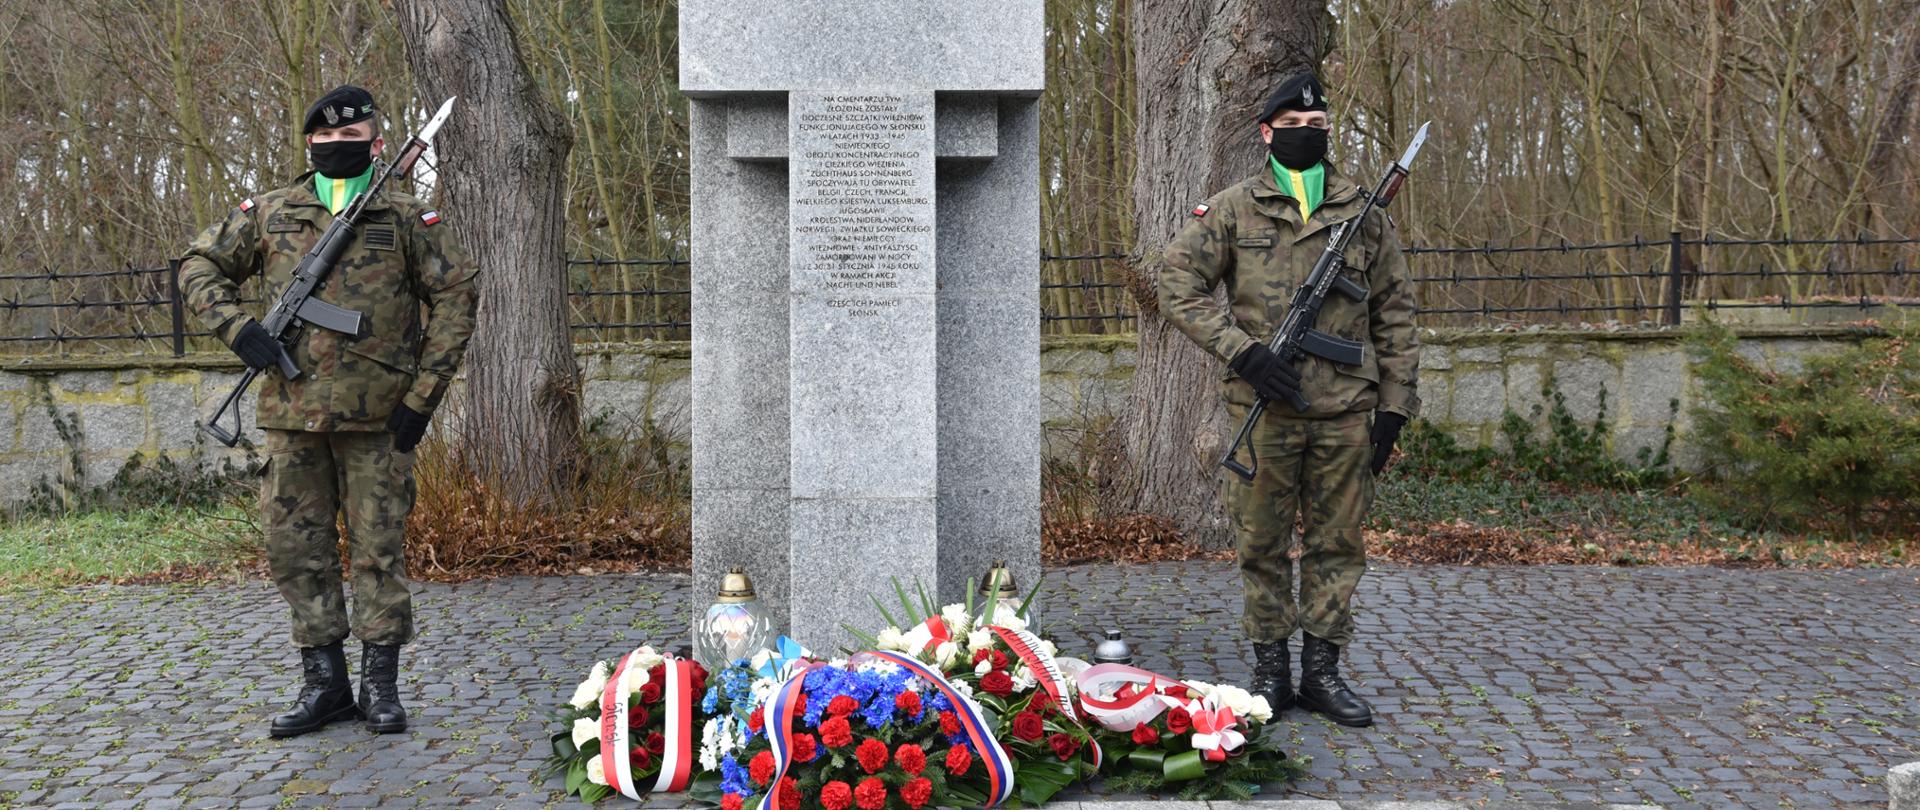 Na środku kamienny pomnik w kształcie krzyża. Po jego prawej i lewej stronie stoi żołnierz. Pod pomnikiem leżą złożone wieńce i stoją zapalone znicze